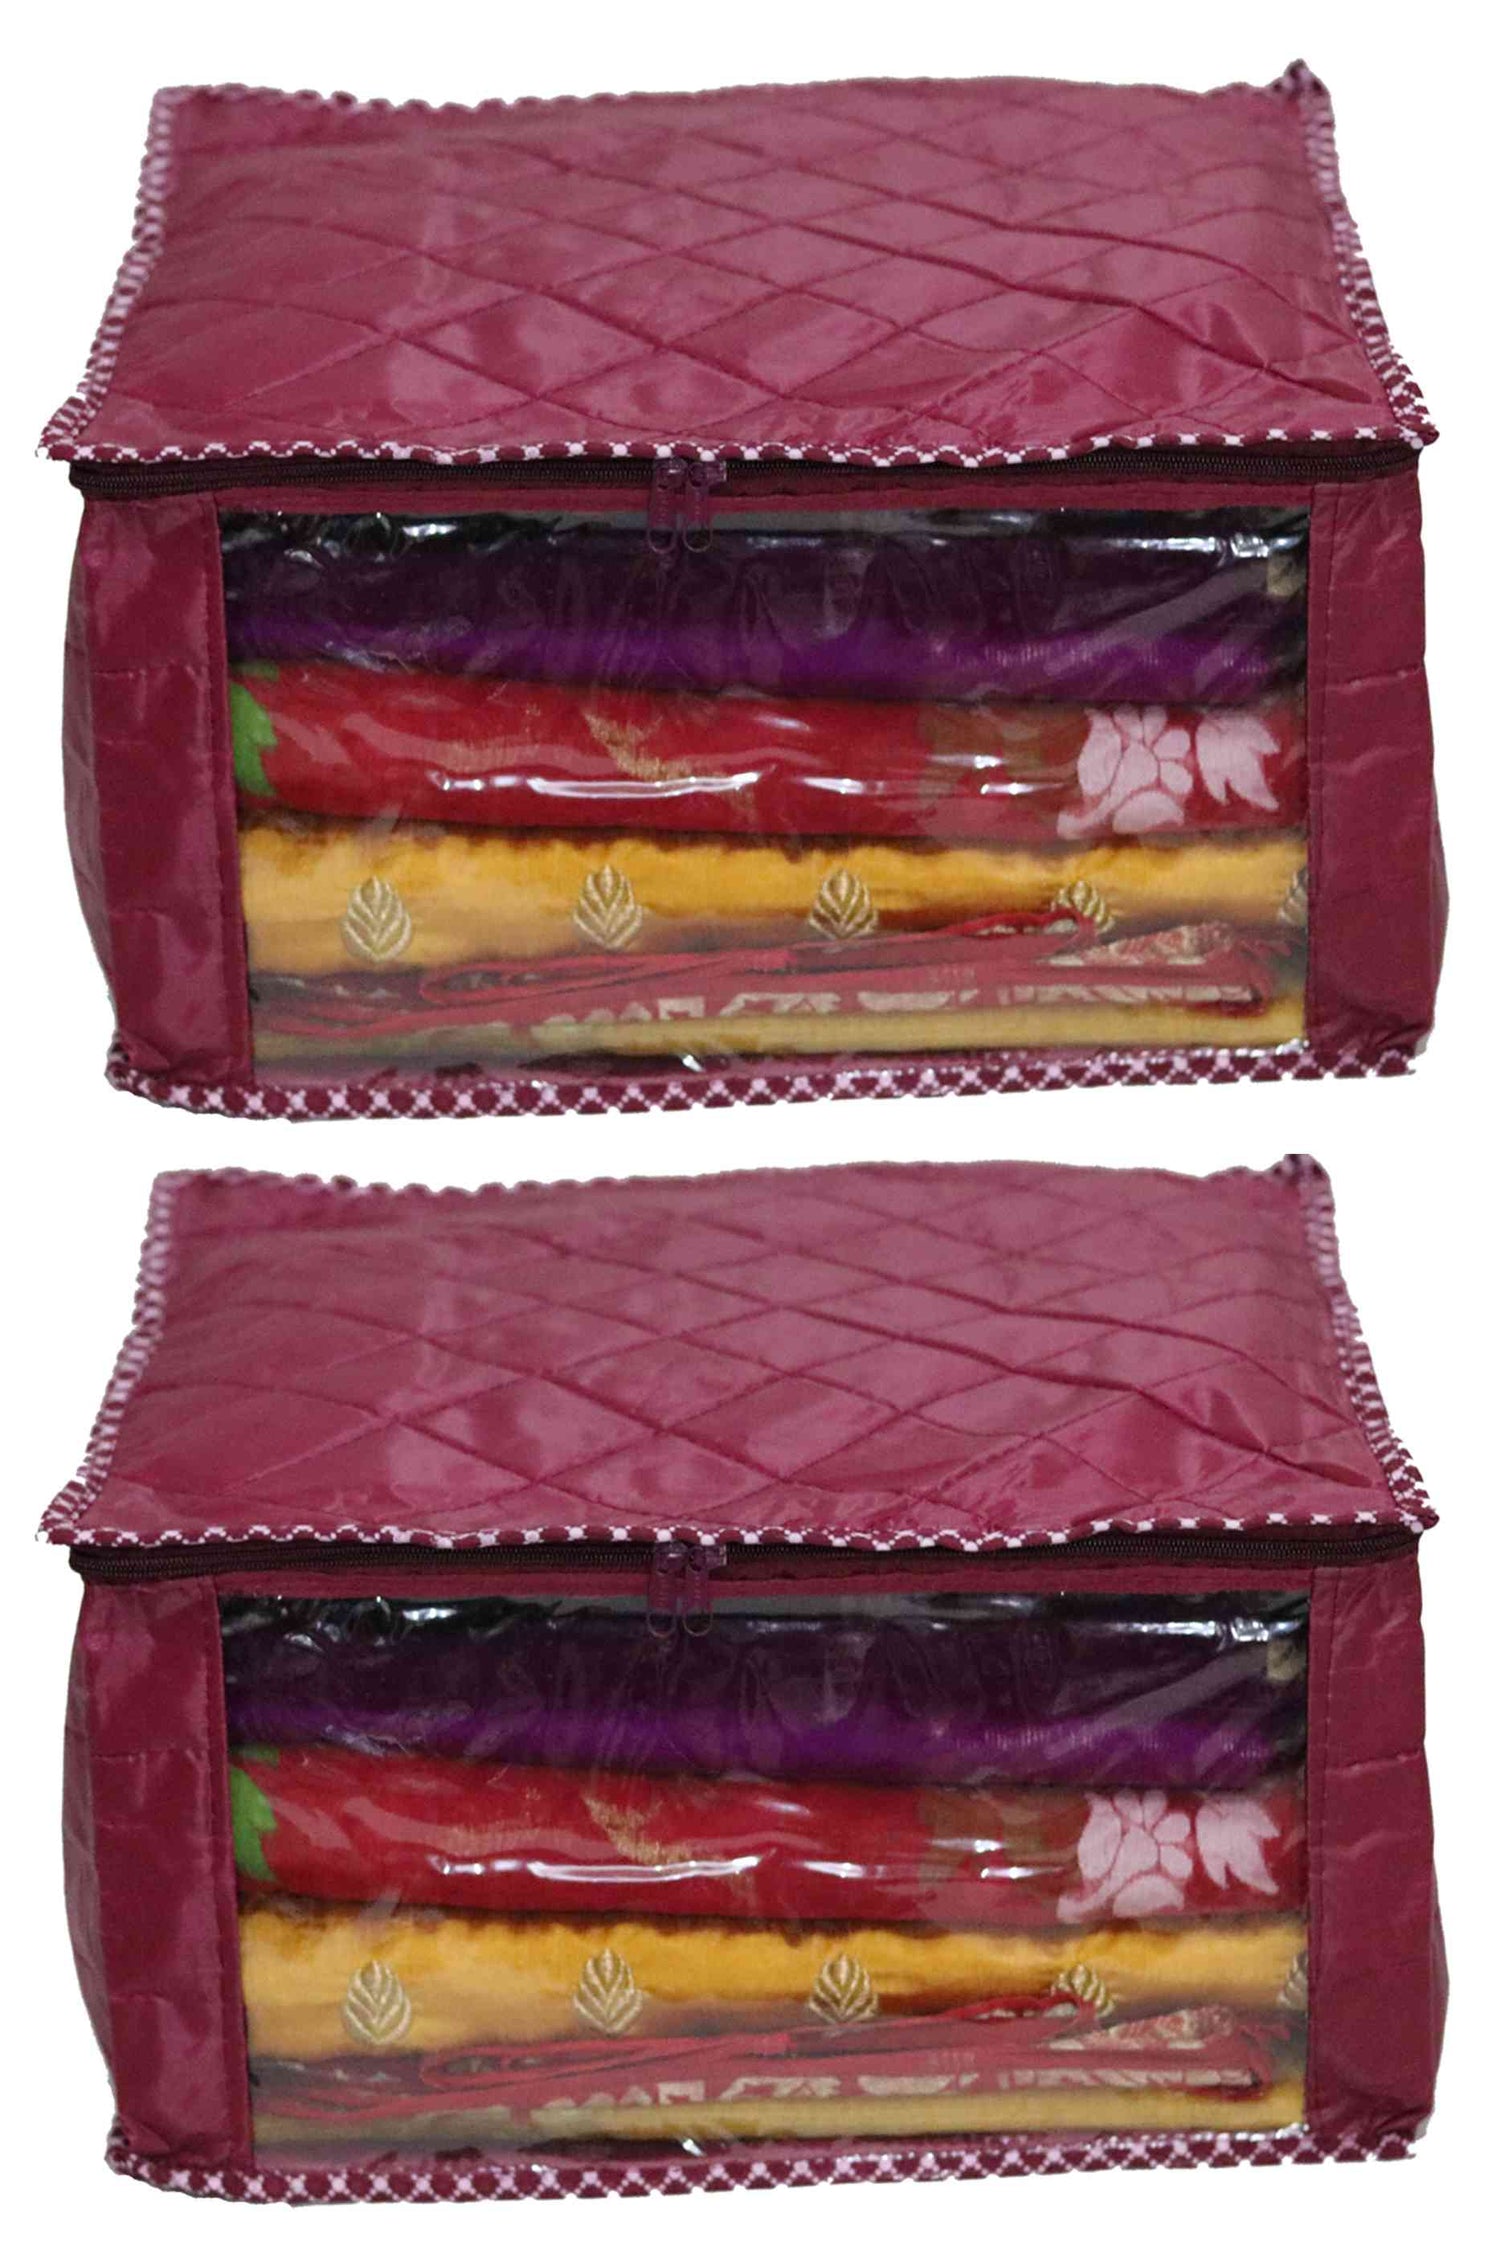 Parachute big saree cover | closet storage combo pack of 2 pcs. - FAVISM